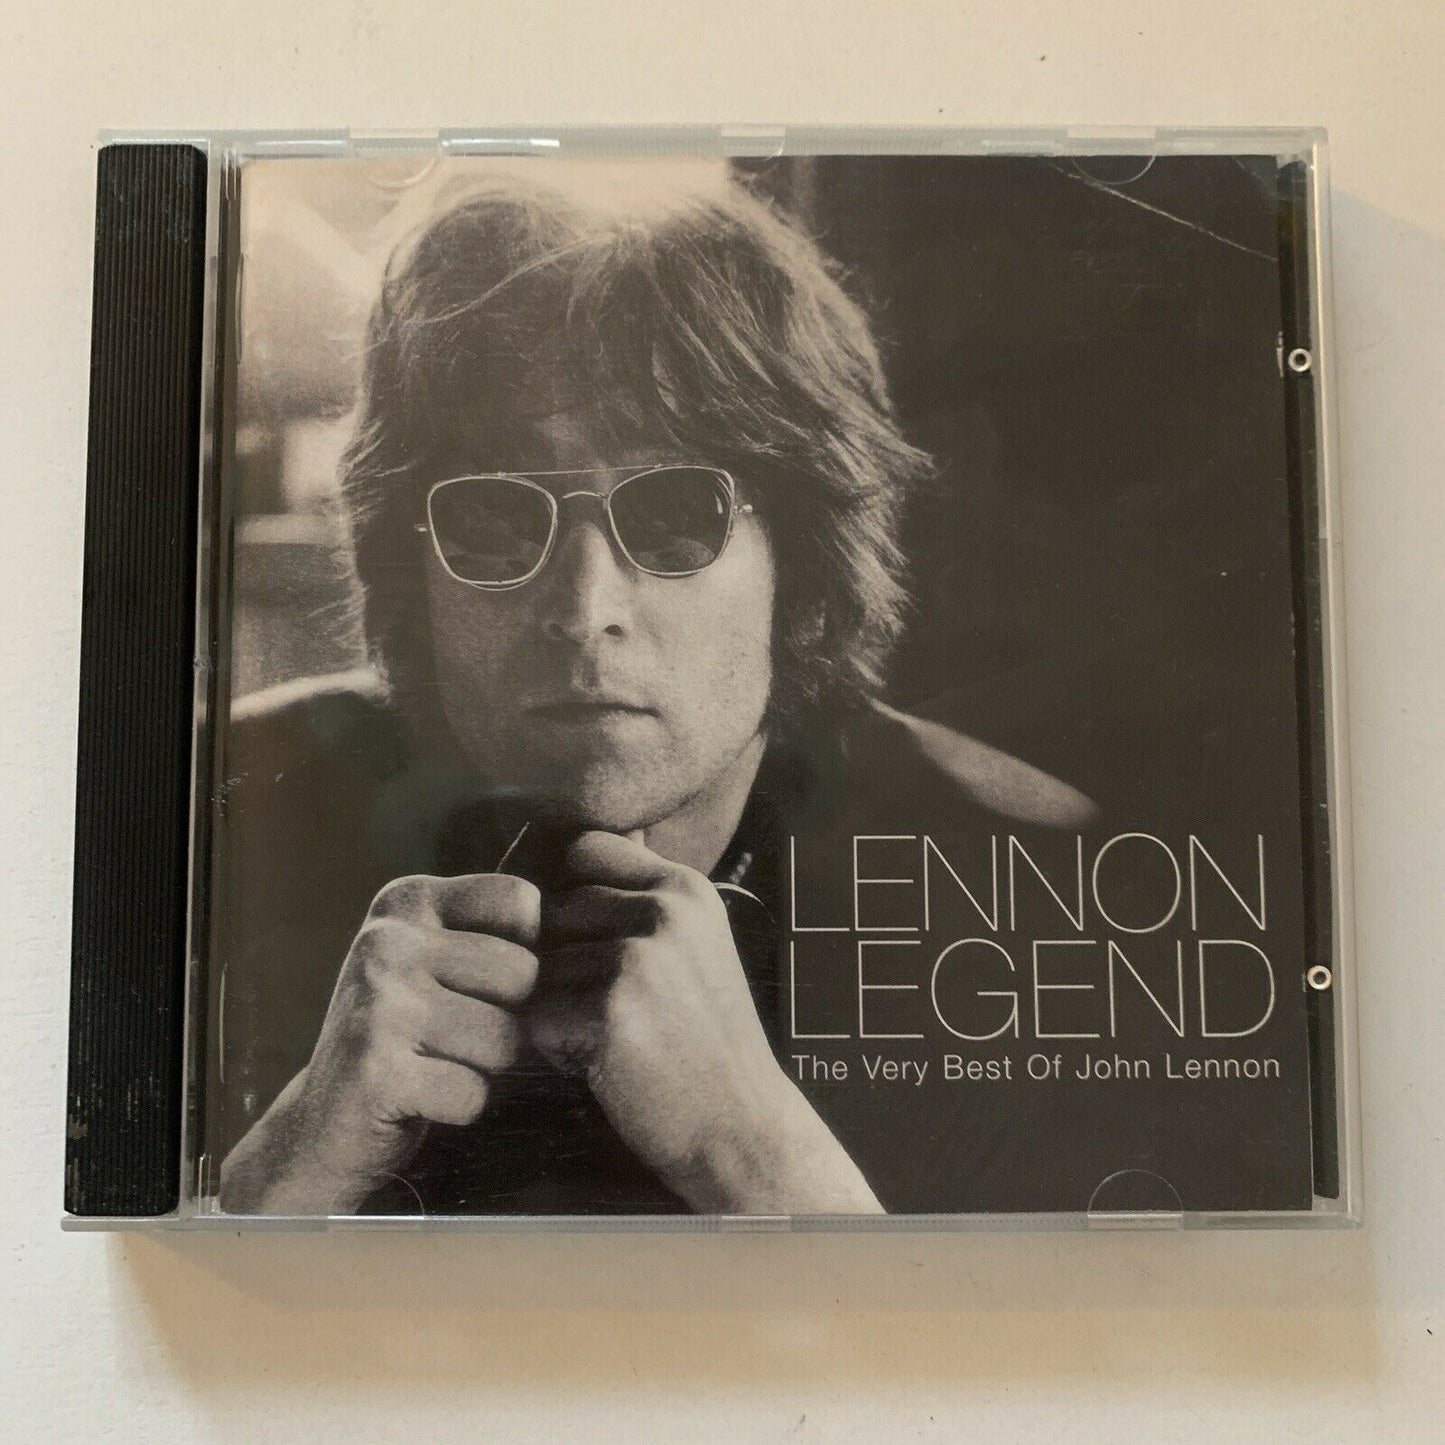 Lennon Legend: The Very Best of John Lennon by John Lennon (CD, 1997)